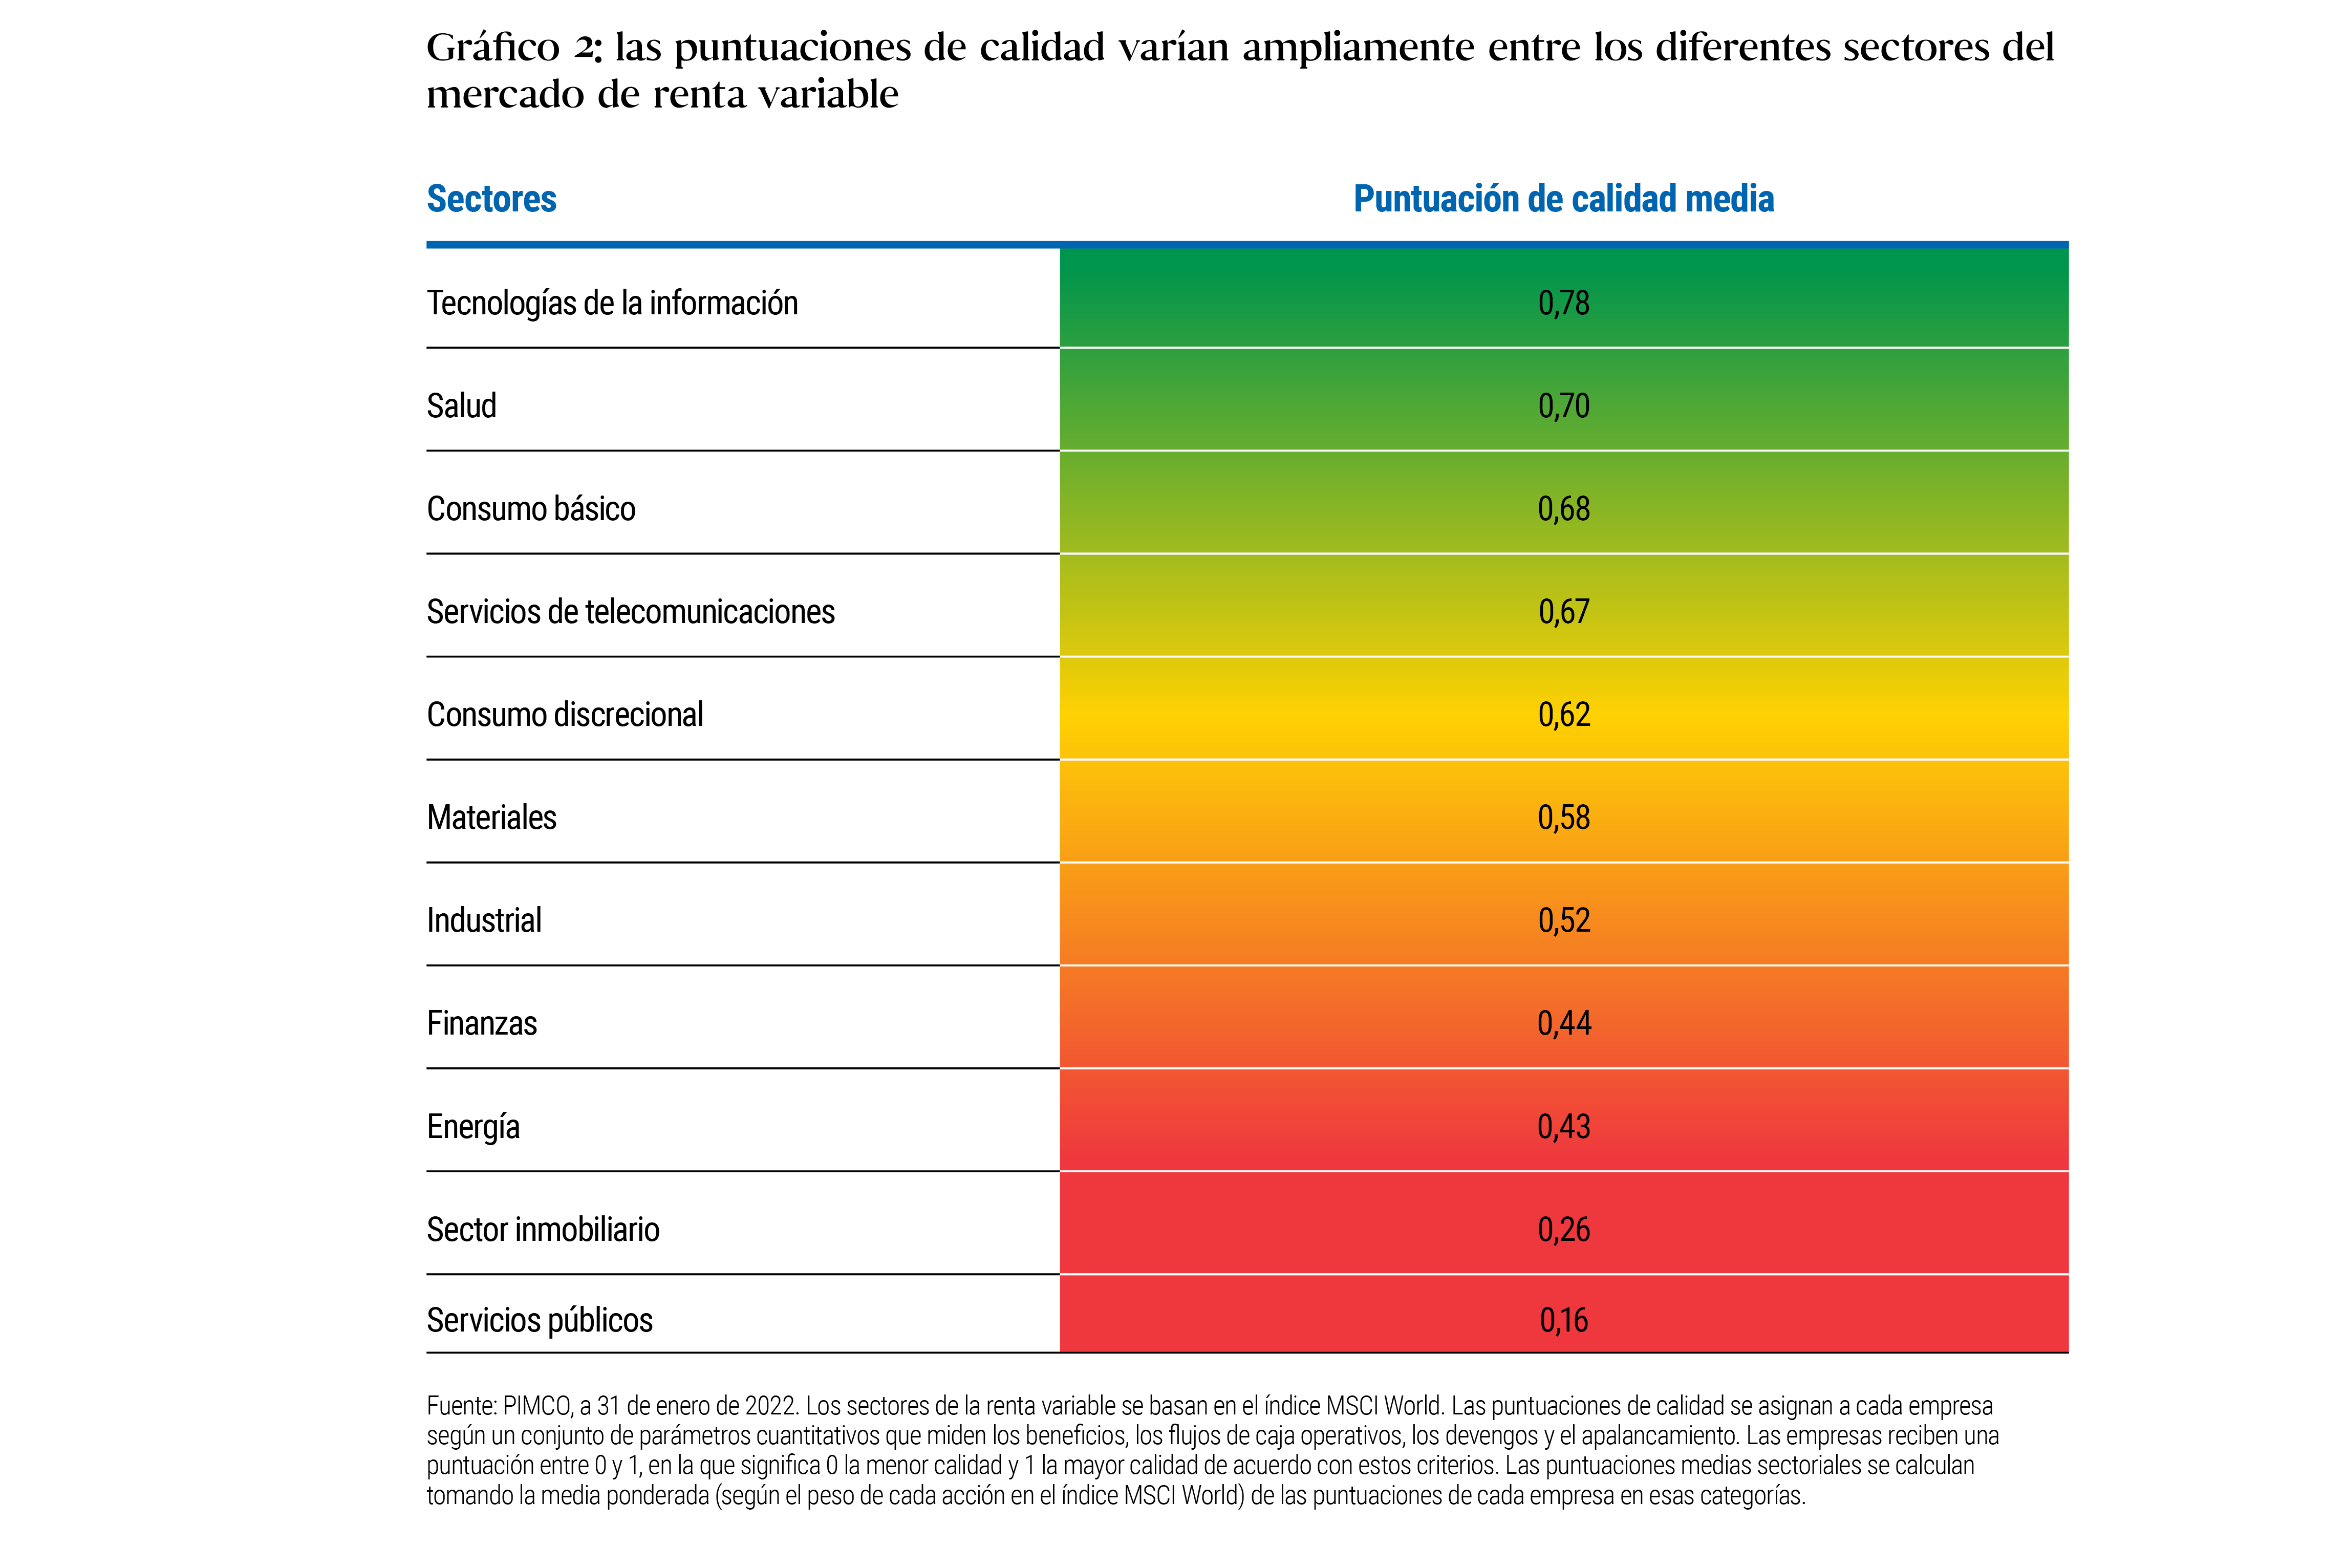 El gráfico 2 es una tabla que compara las puntuaciones medias de calidad de varios sectores del índice de renta variable MSCI World. Las puntuaciones van de una escala de 0 a 1, donde 1 representa la mayor calidad. En lo alto de la tabla (máxima calidad) se sitúa el sector de la tecnología de la información, con una puntuación de 0,78, seguido de salud con 0,70 y bienes de consumo básico con 0,68. En la parte más baja de la tabla está servicios públicos, con 0,16. Si desea obtener más, consulte la nota que figura debajo de la tabla.